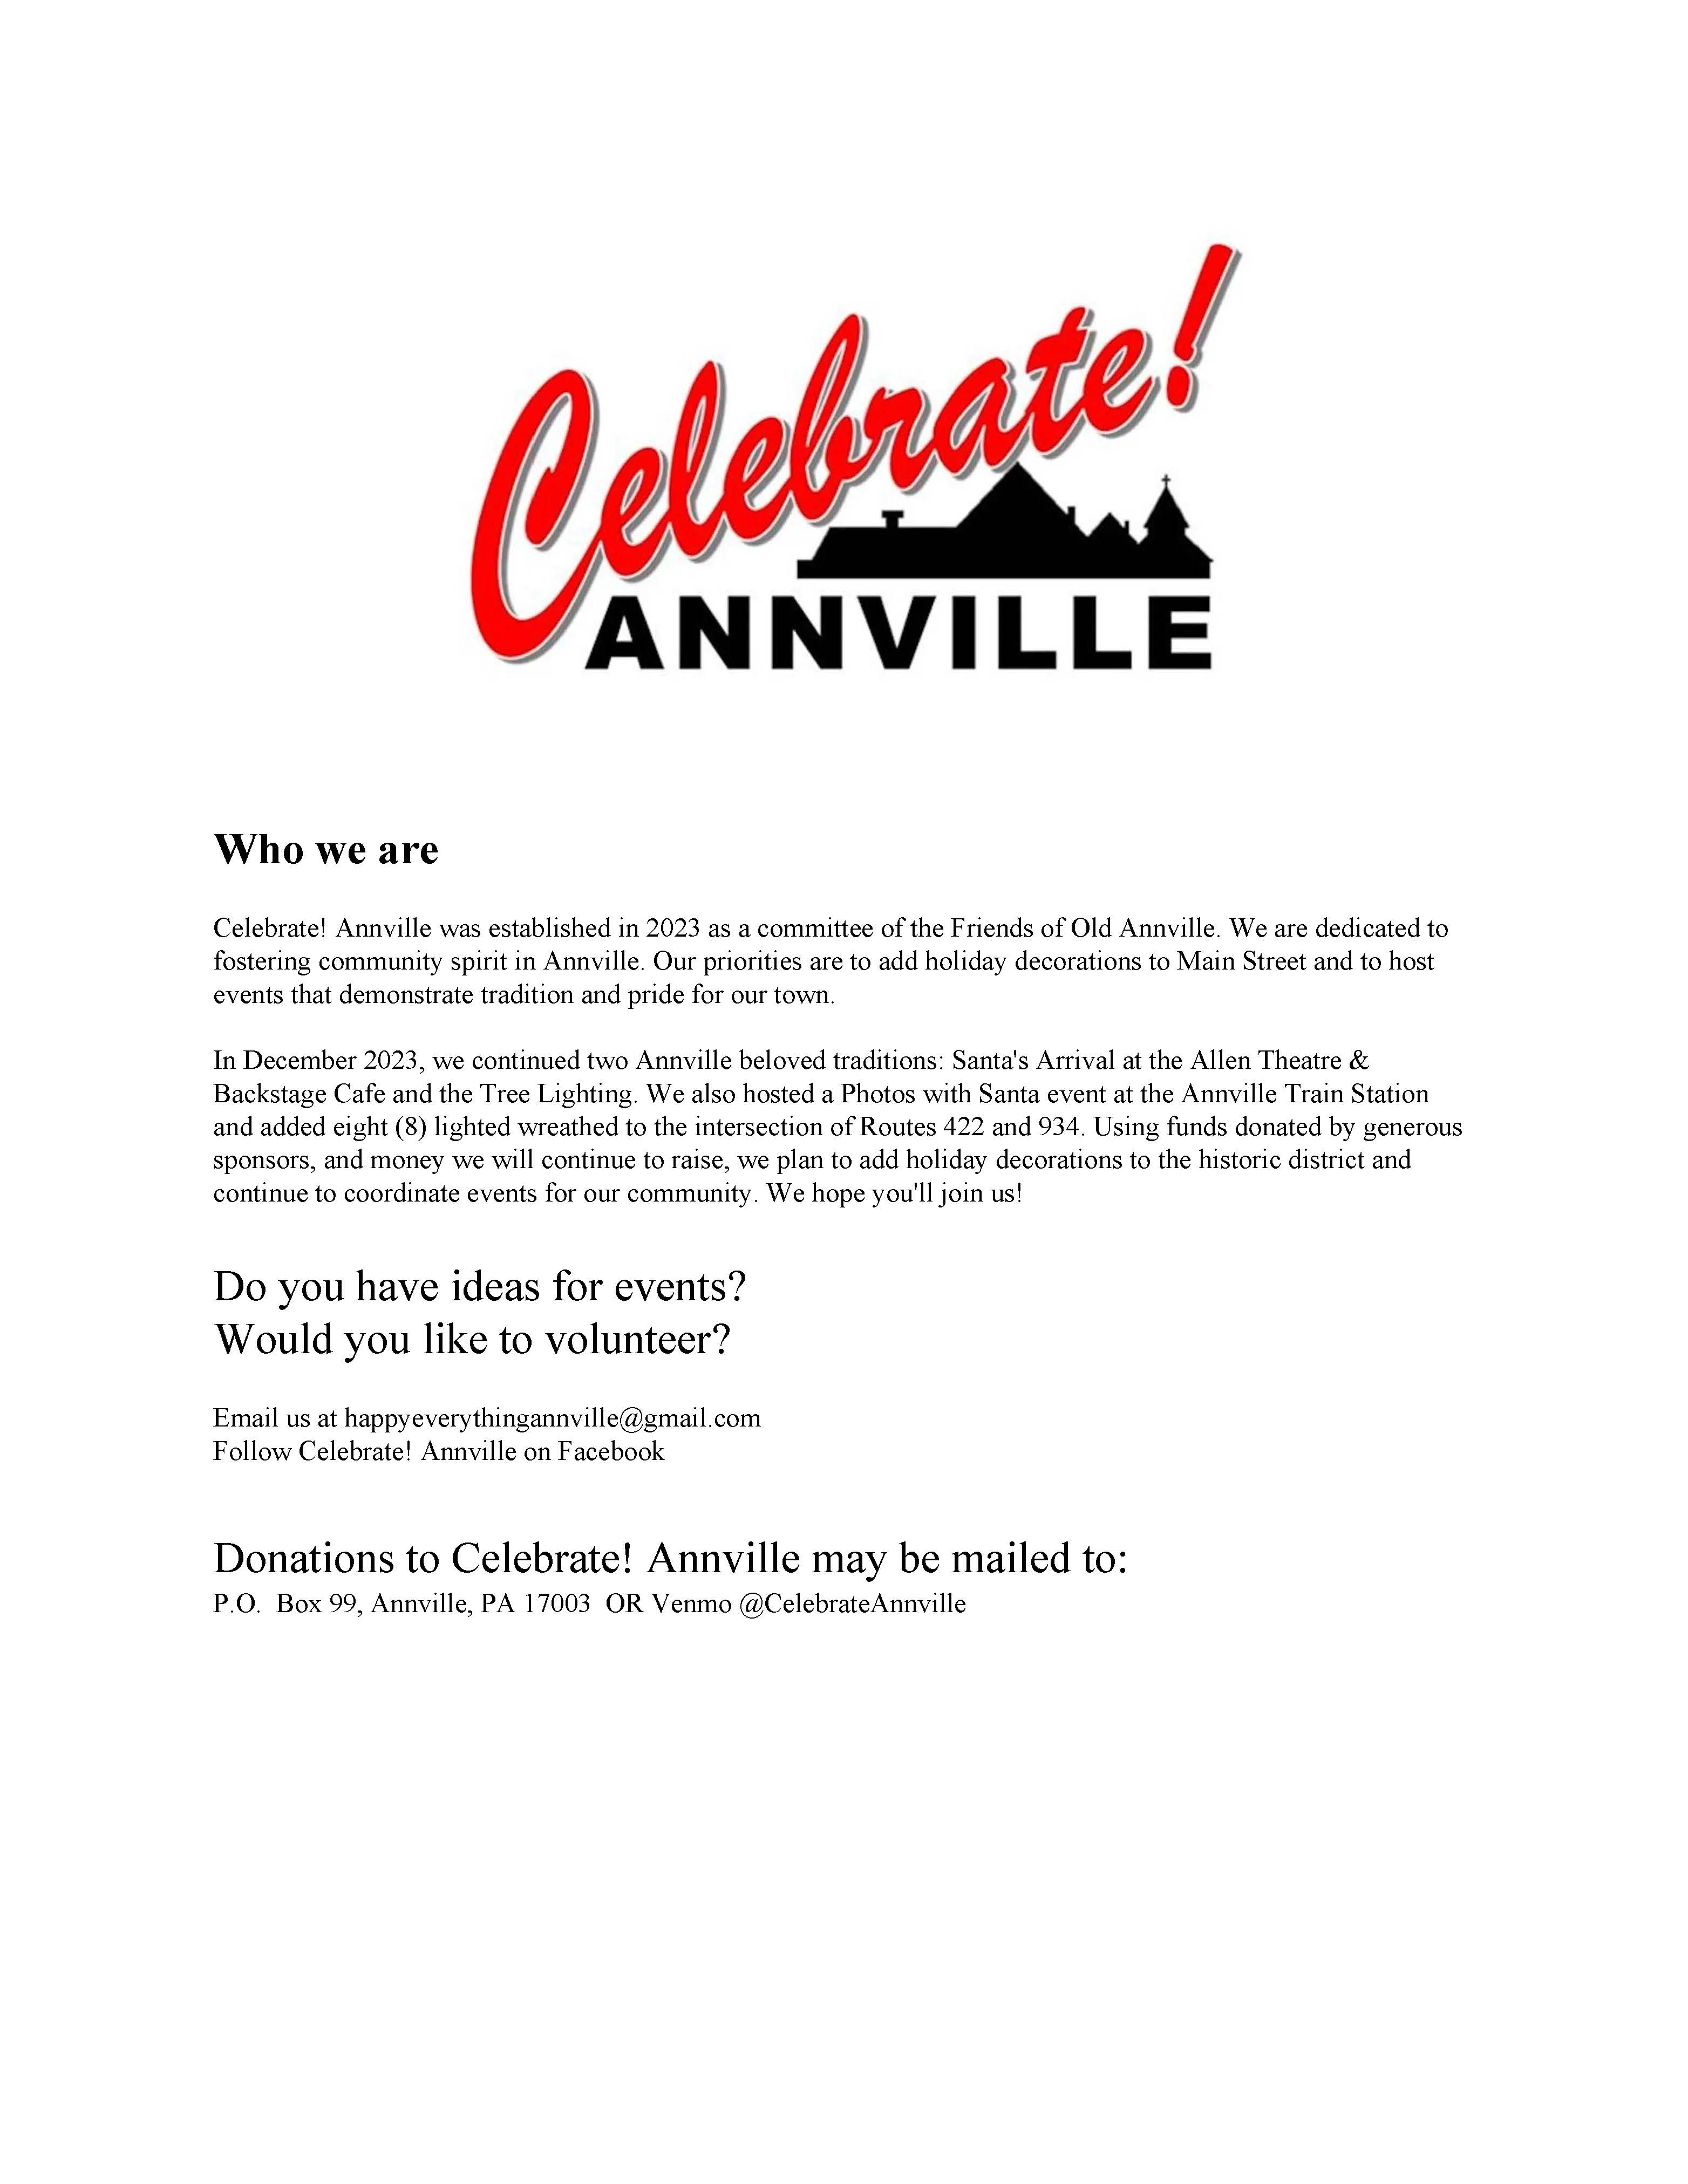 Celebrate Annville